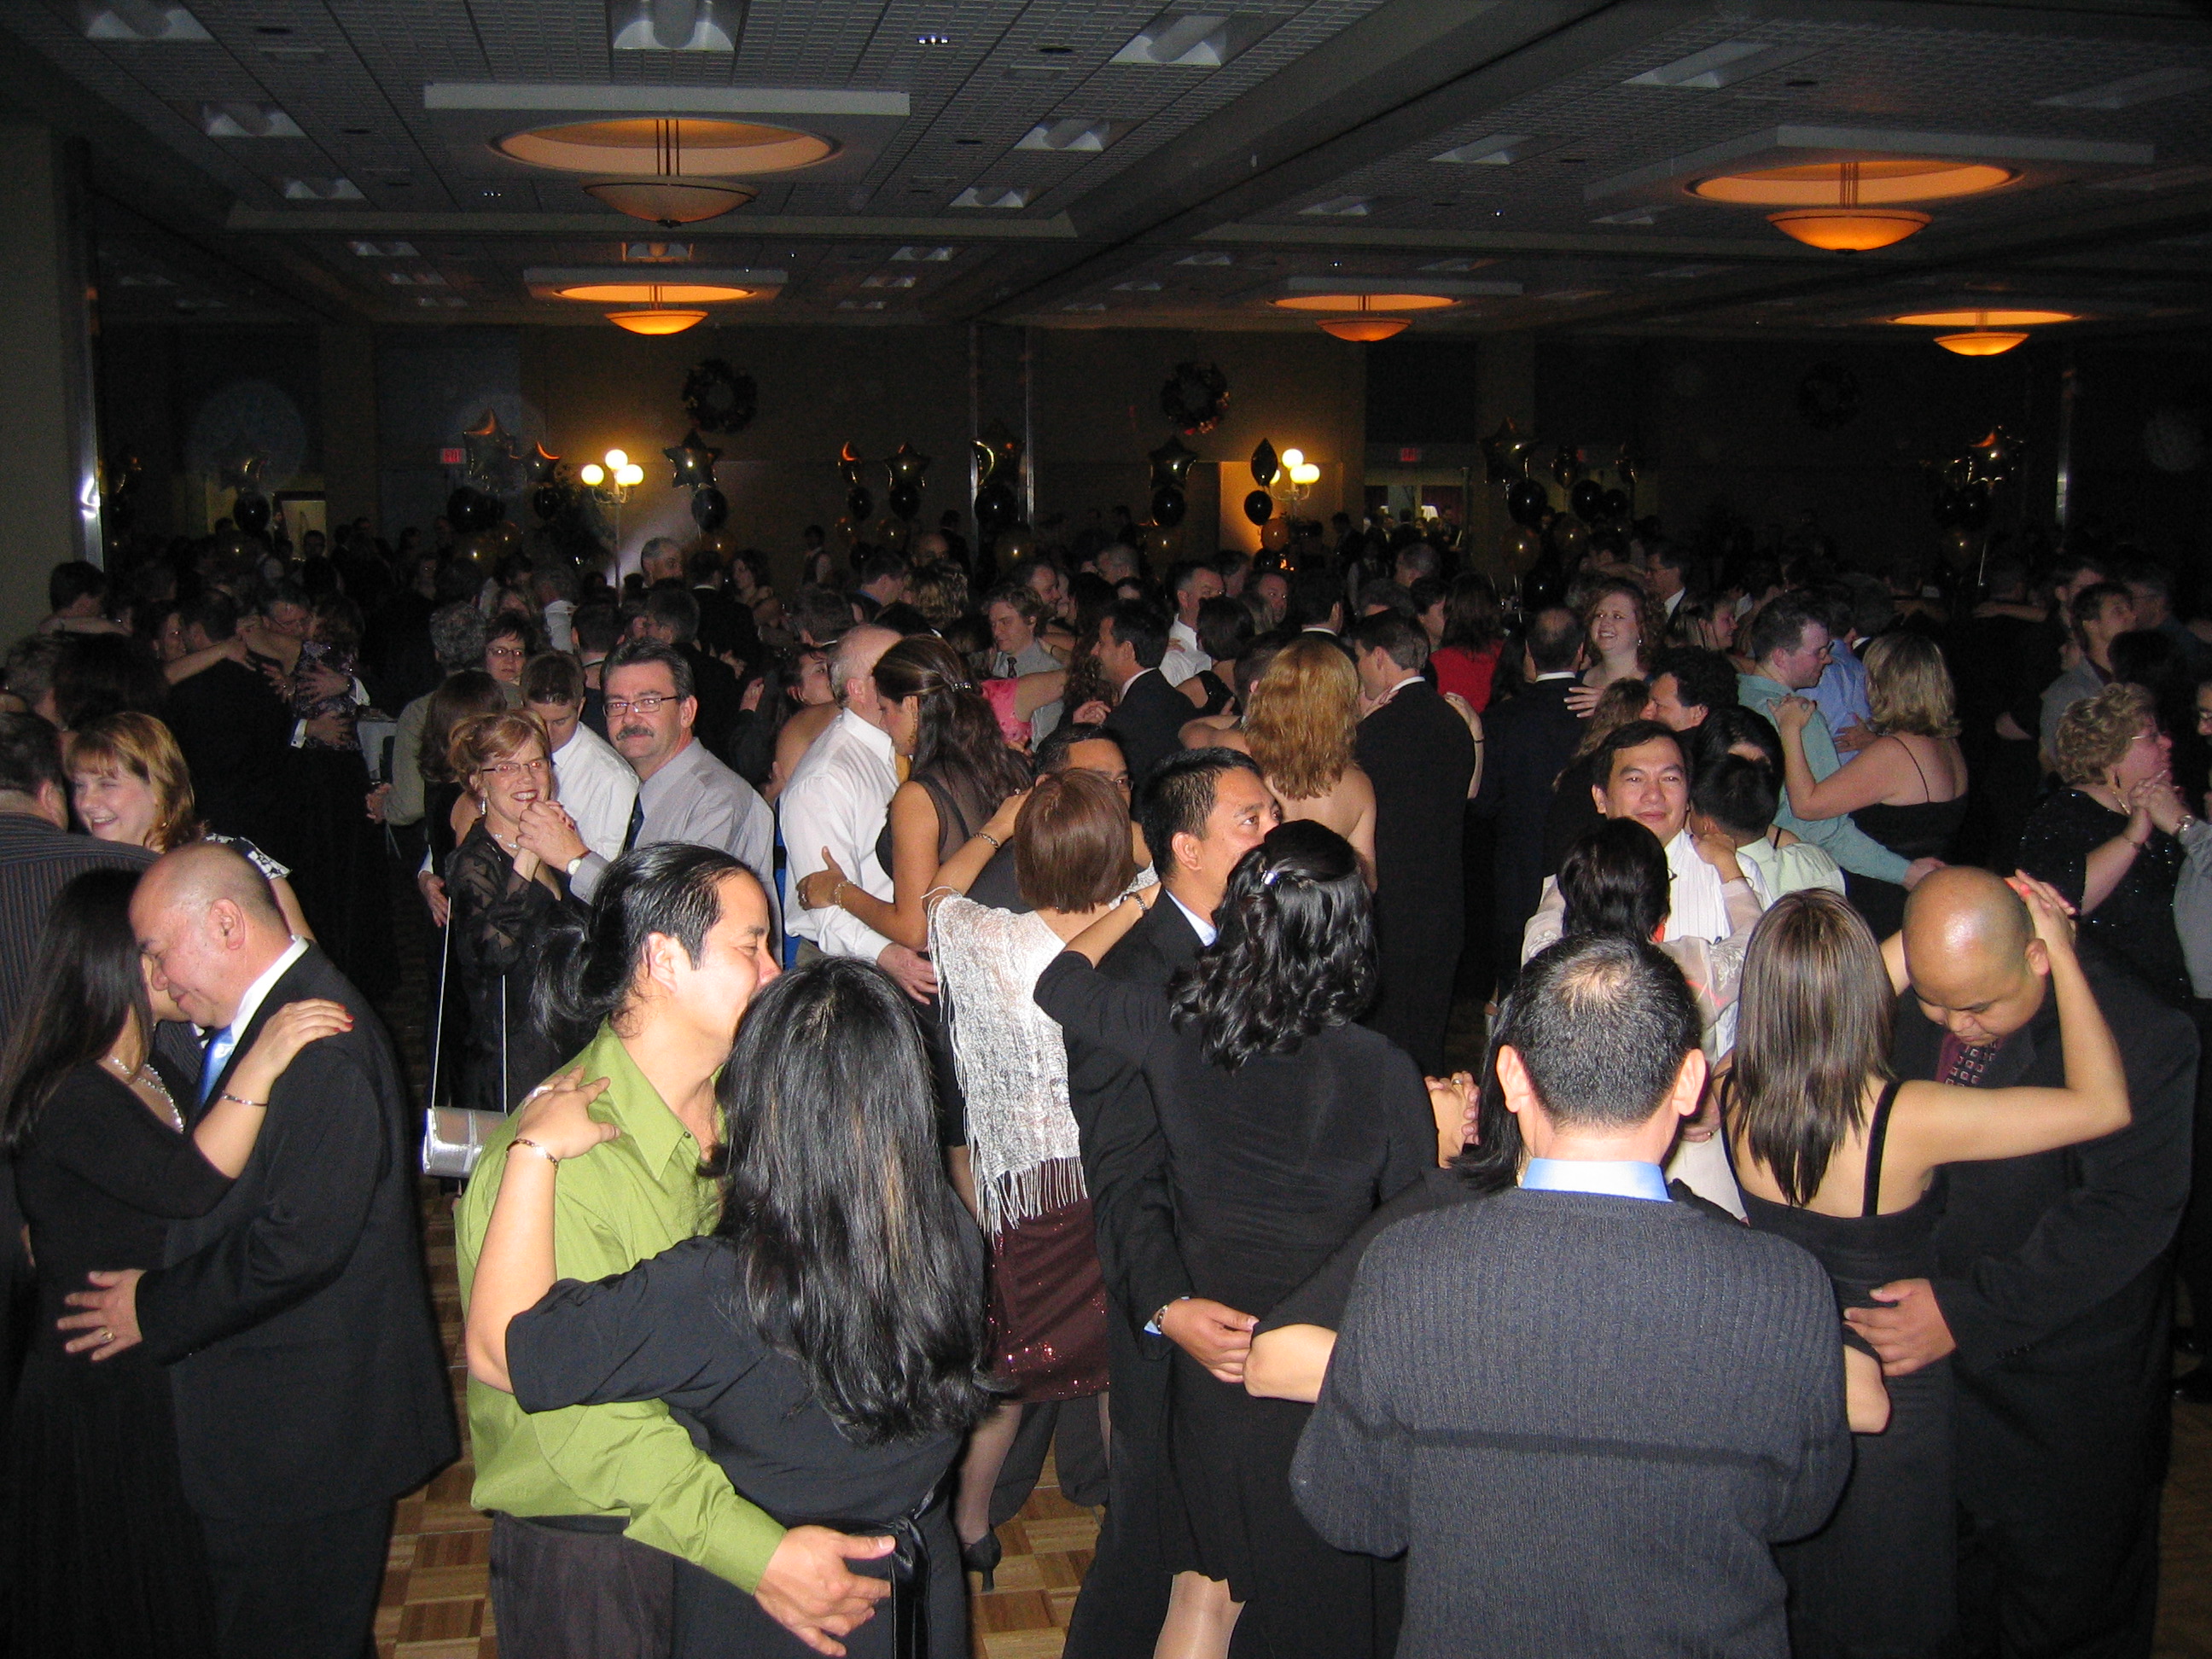 Large Crowd Dancing